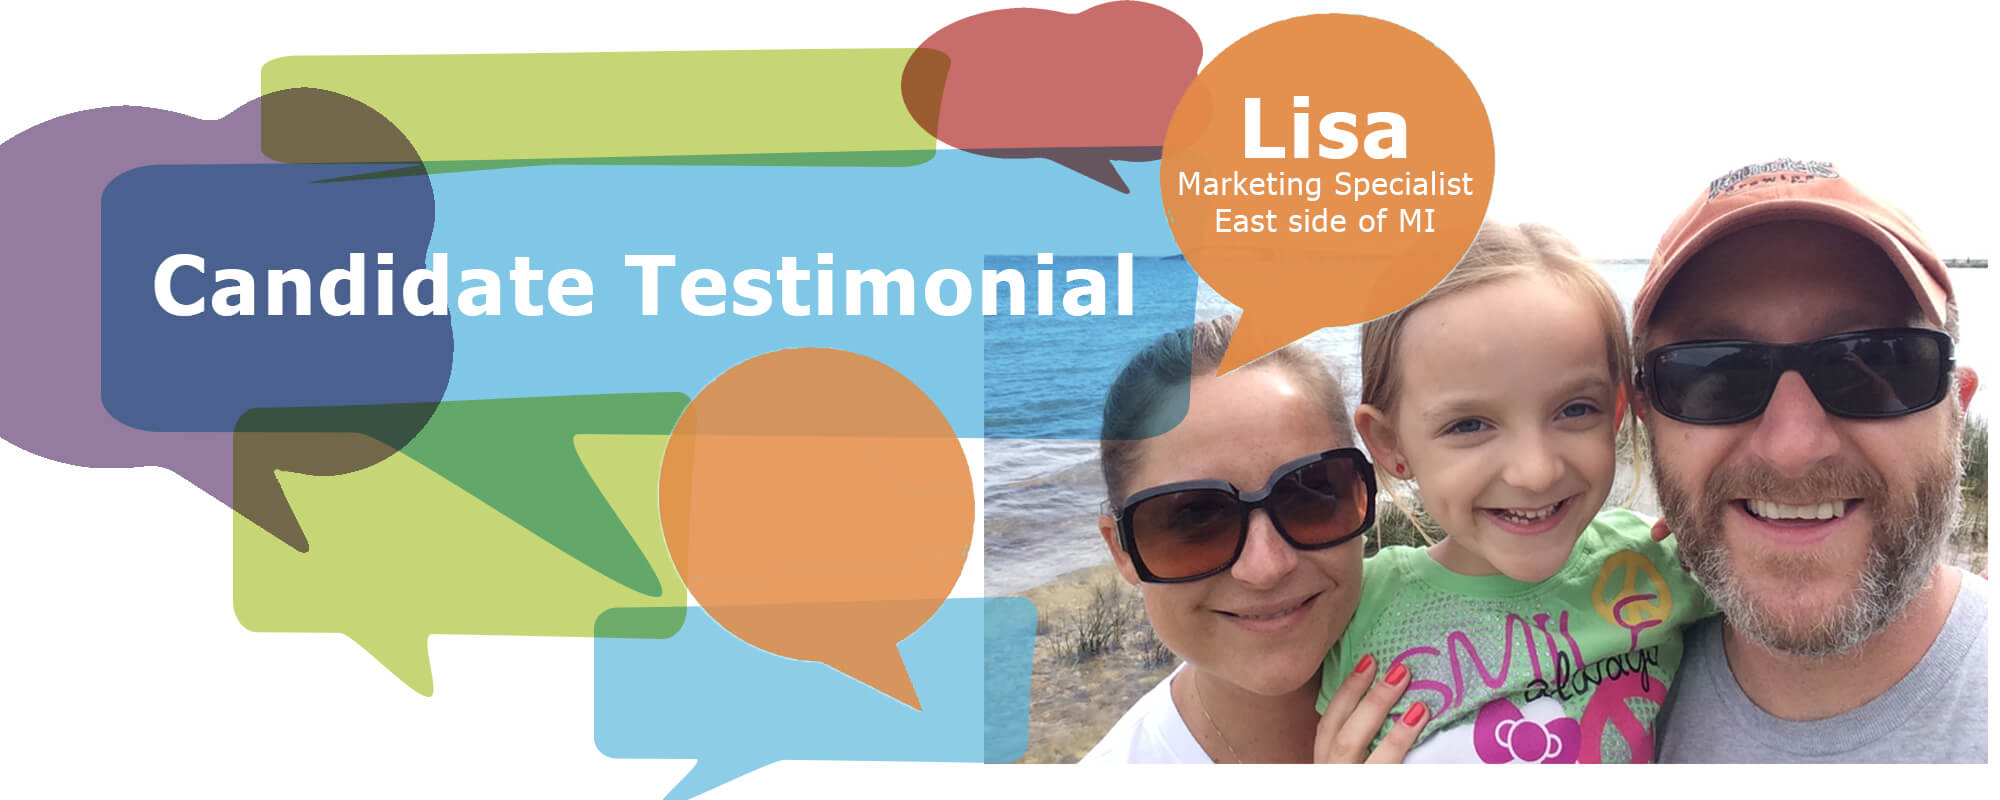 Candidate Testimonial: Lisa